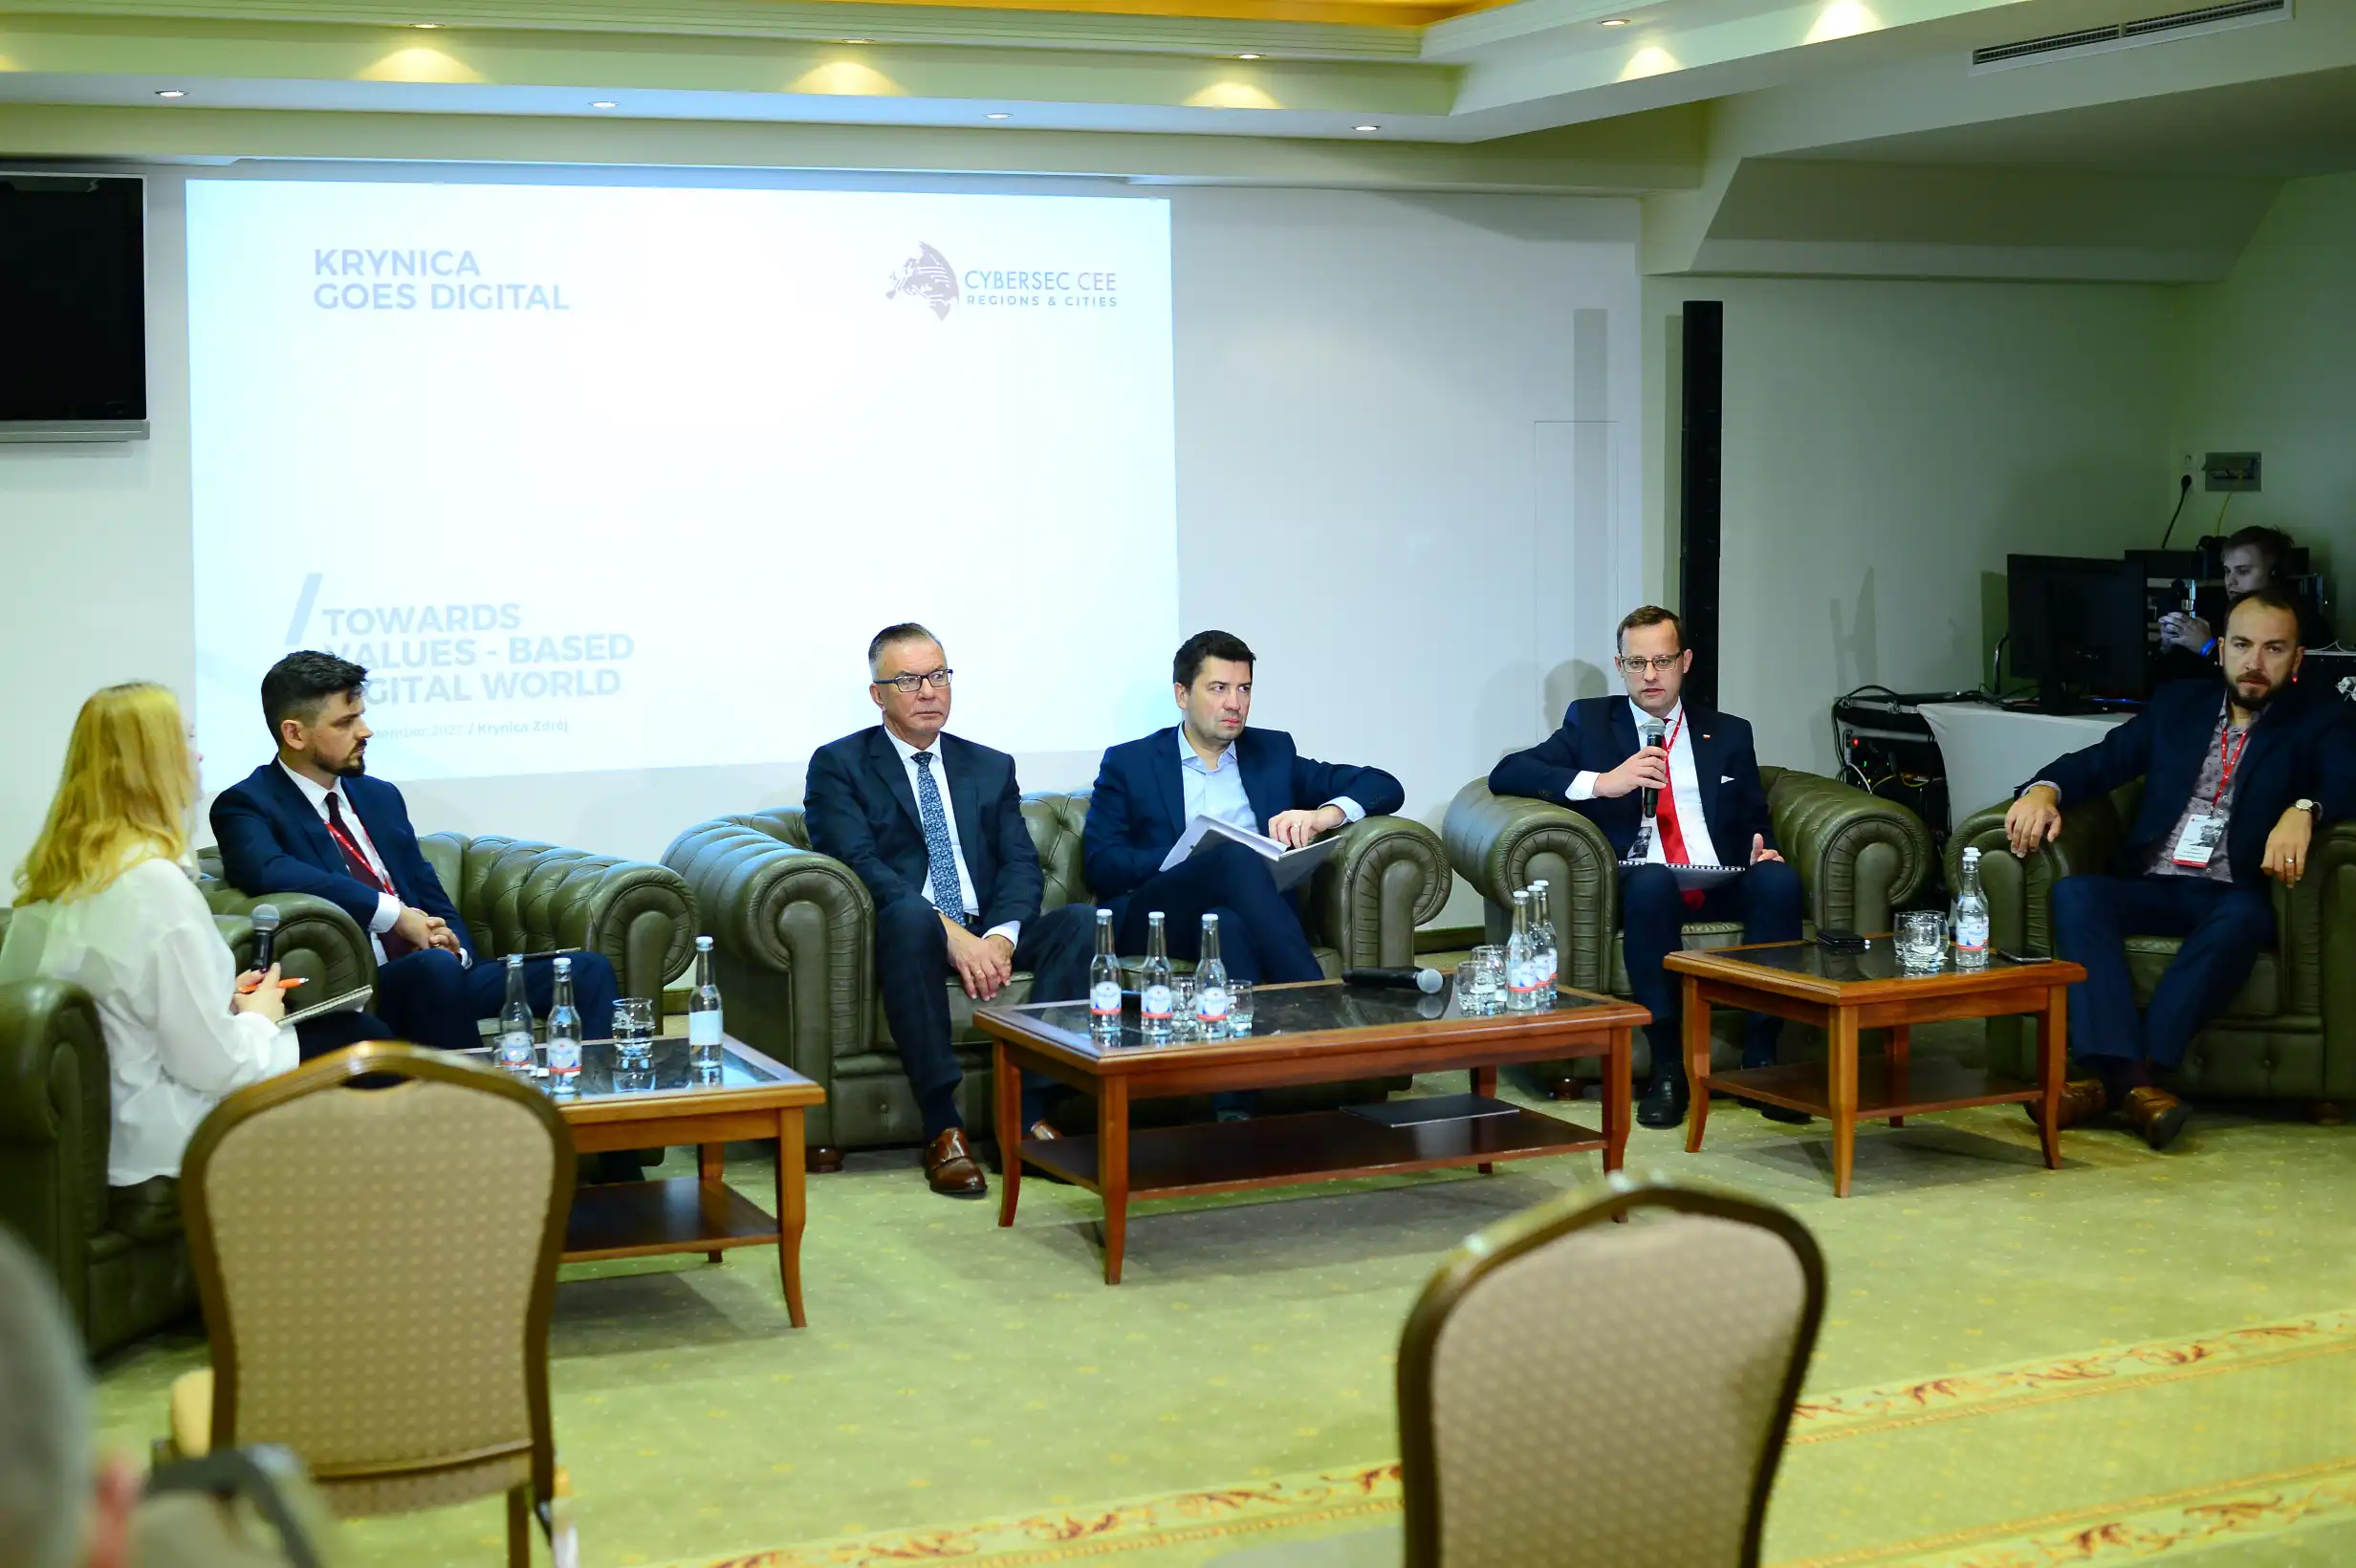 Debata „Sprawne sądy a rozwój gospodarczy” na Forum Cybersec w Krynicy